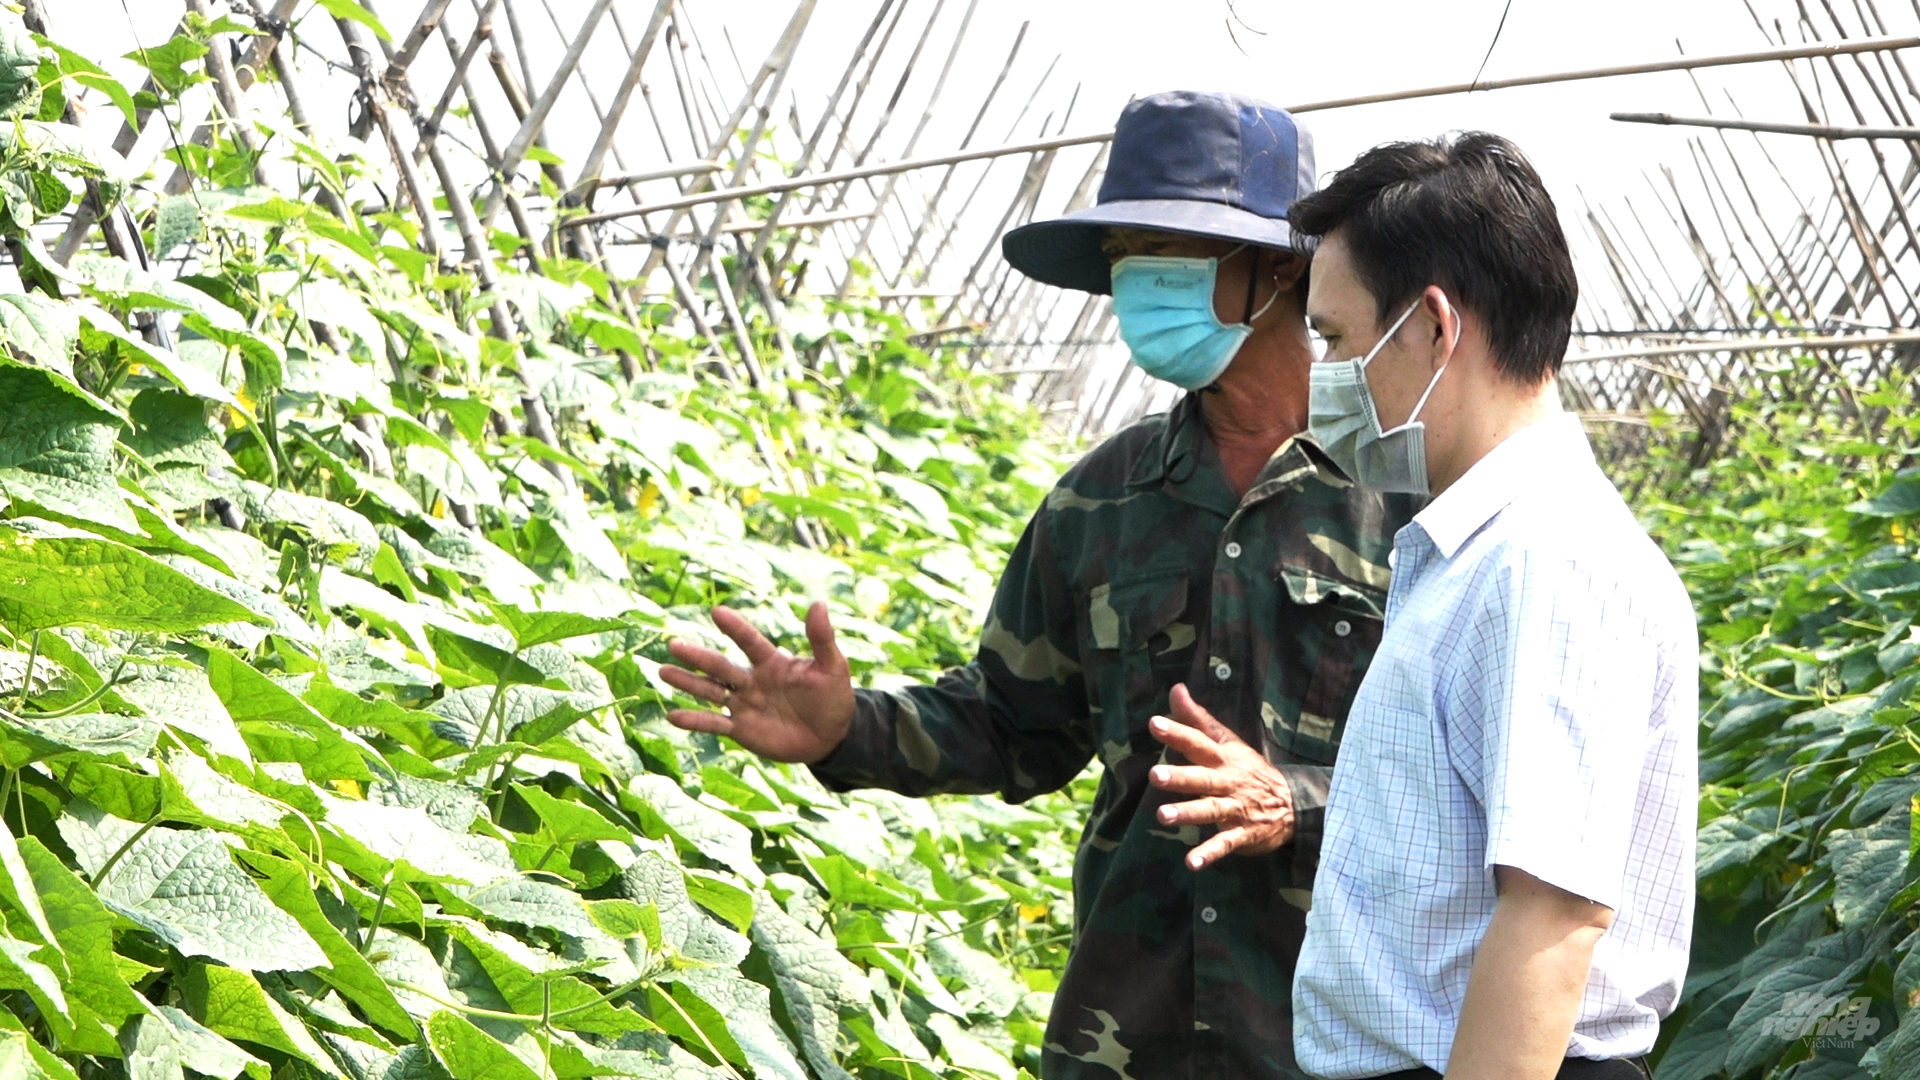 Mô hình trồng dưa leo an toàn của Tổ sản xuất rau VietGAP Đoàn Kết được cán bộ kỹ thuật của Viện Khoa học Kỹ thuật Nông nghiệp miền Nam hỗ trợ quy trình sản xuất, mang lại hiệu quả cao cho nông dân. Ảnh: Minh Sáng.